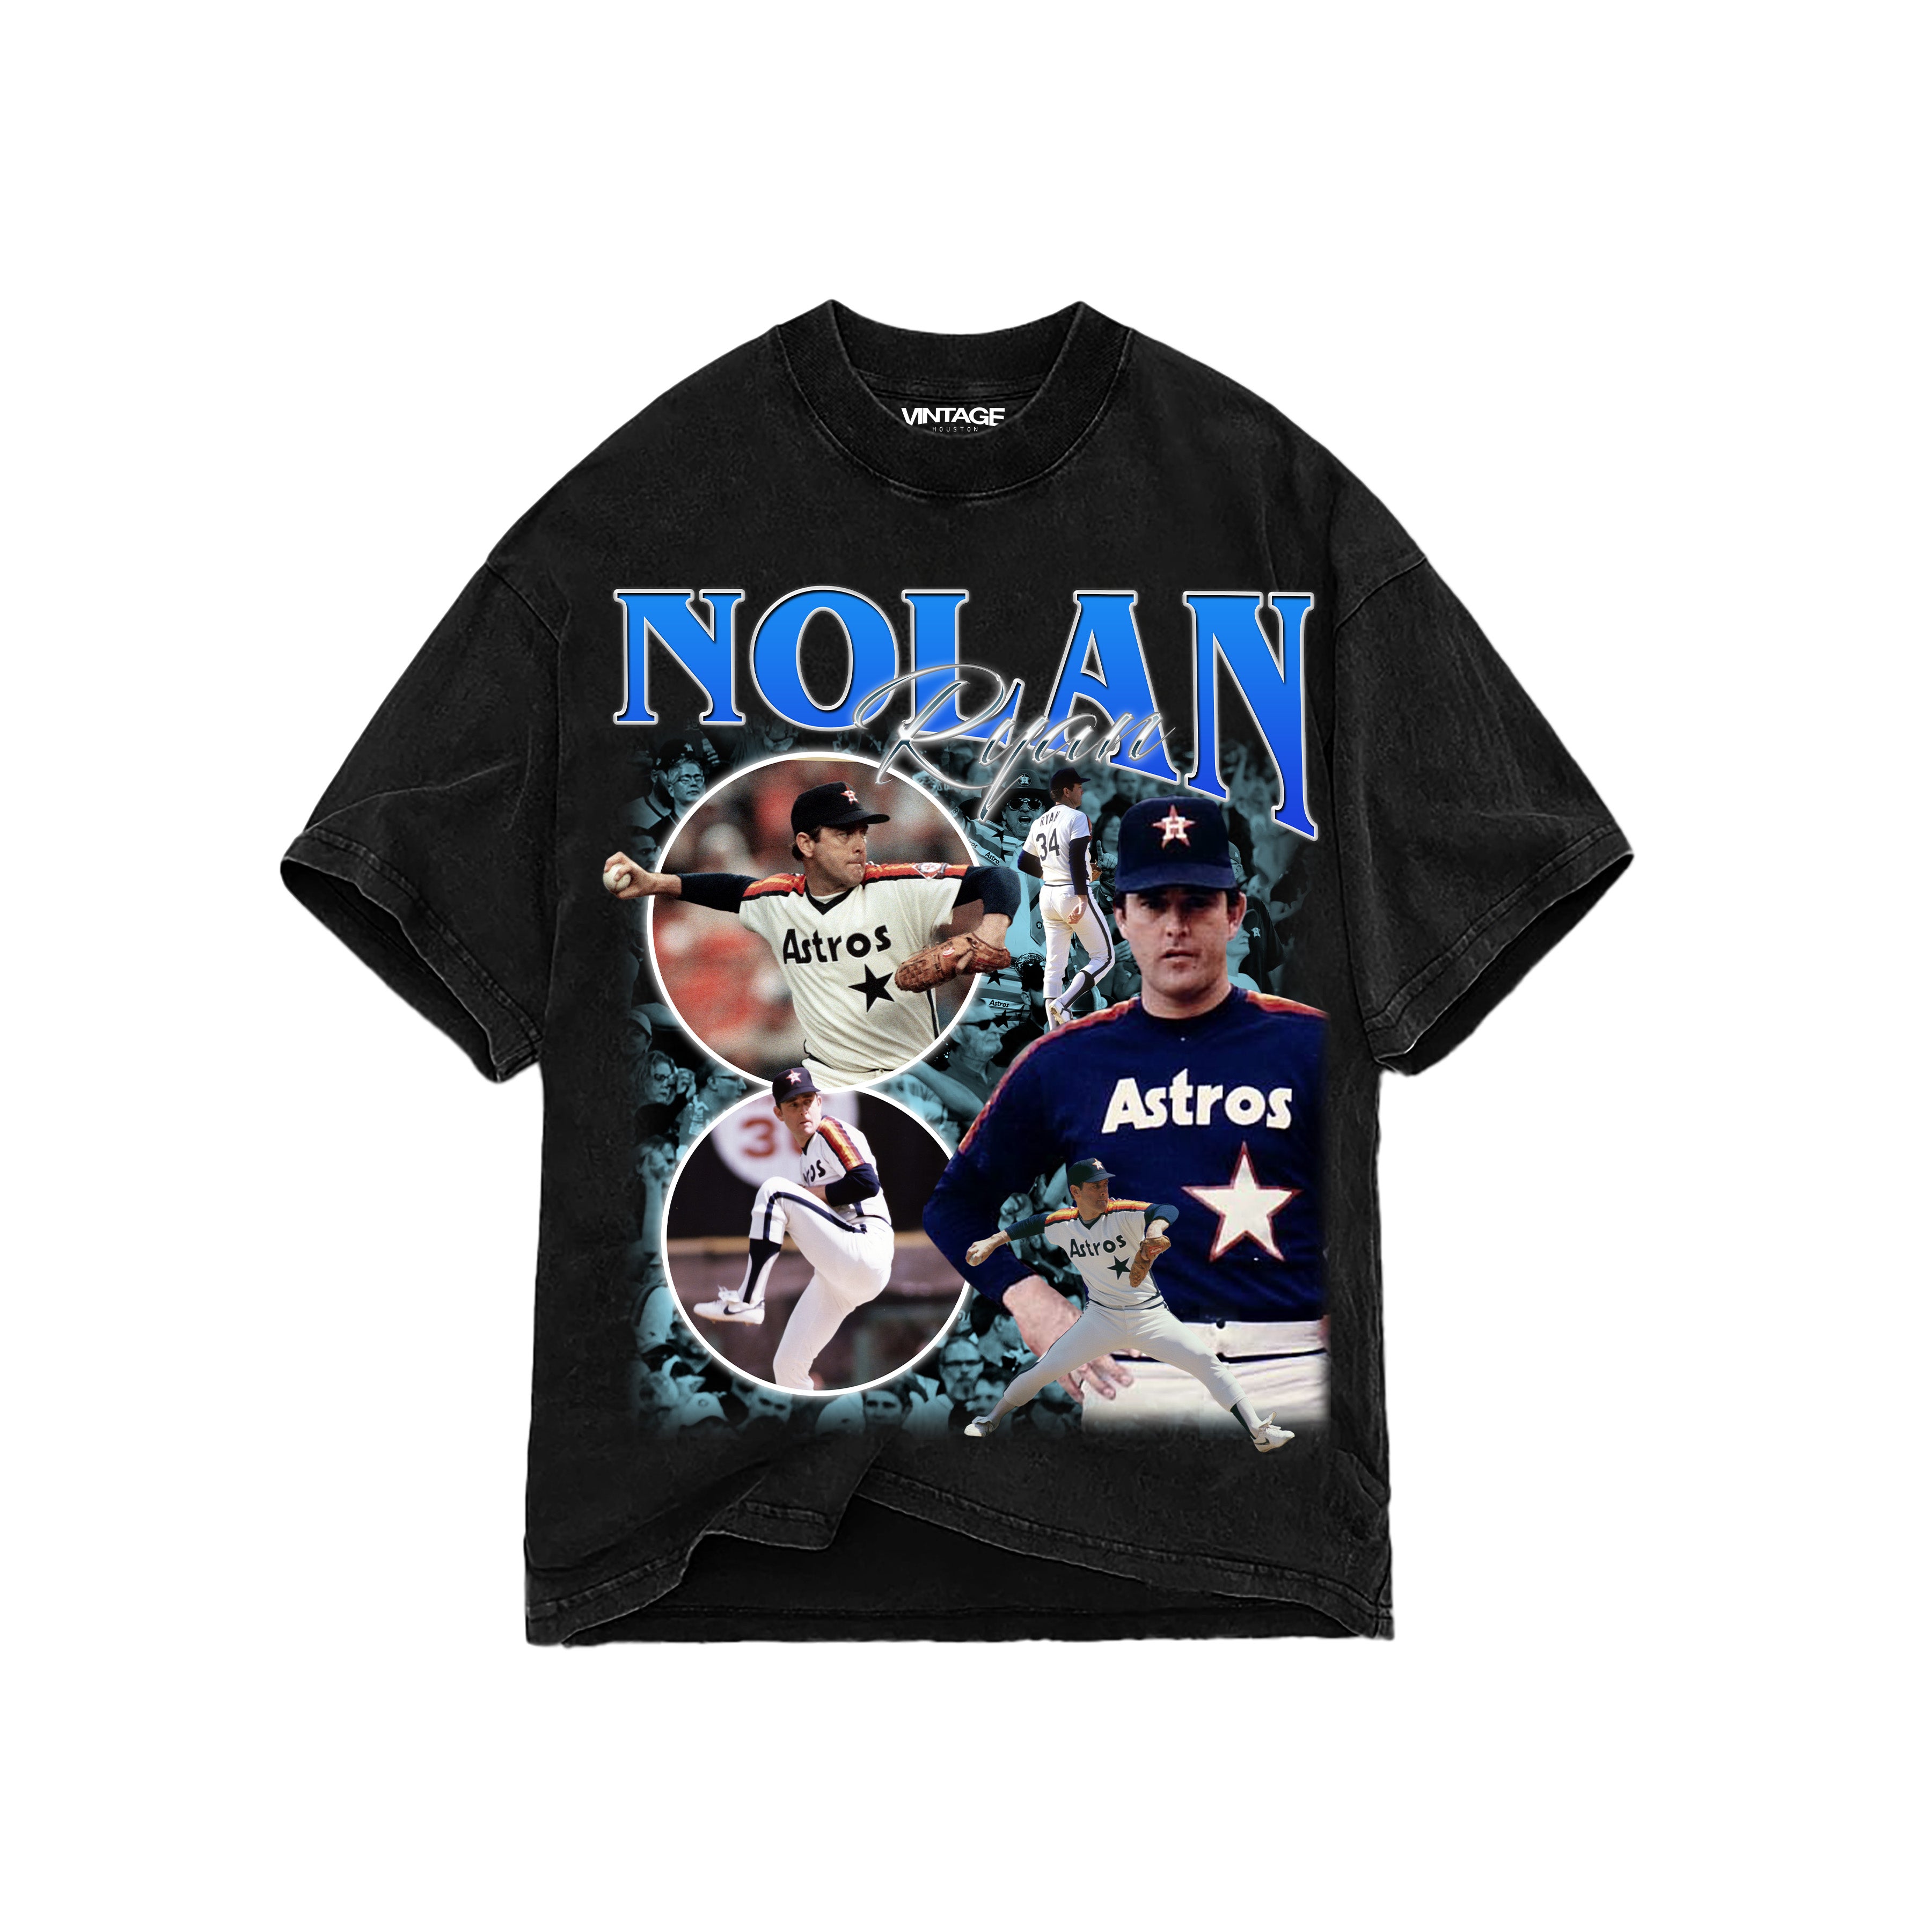 Nolan Ryan T-Shirt